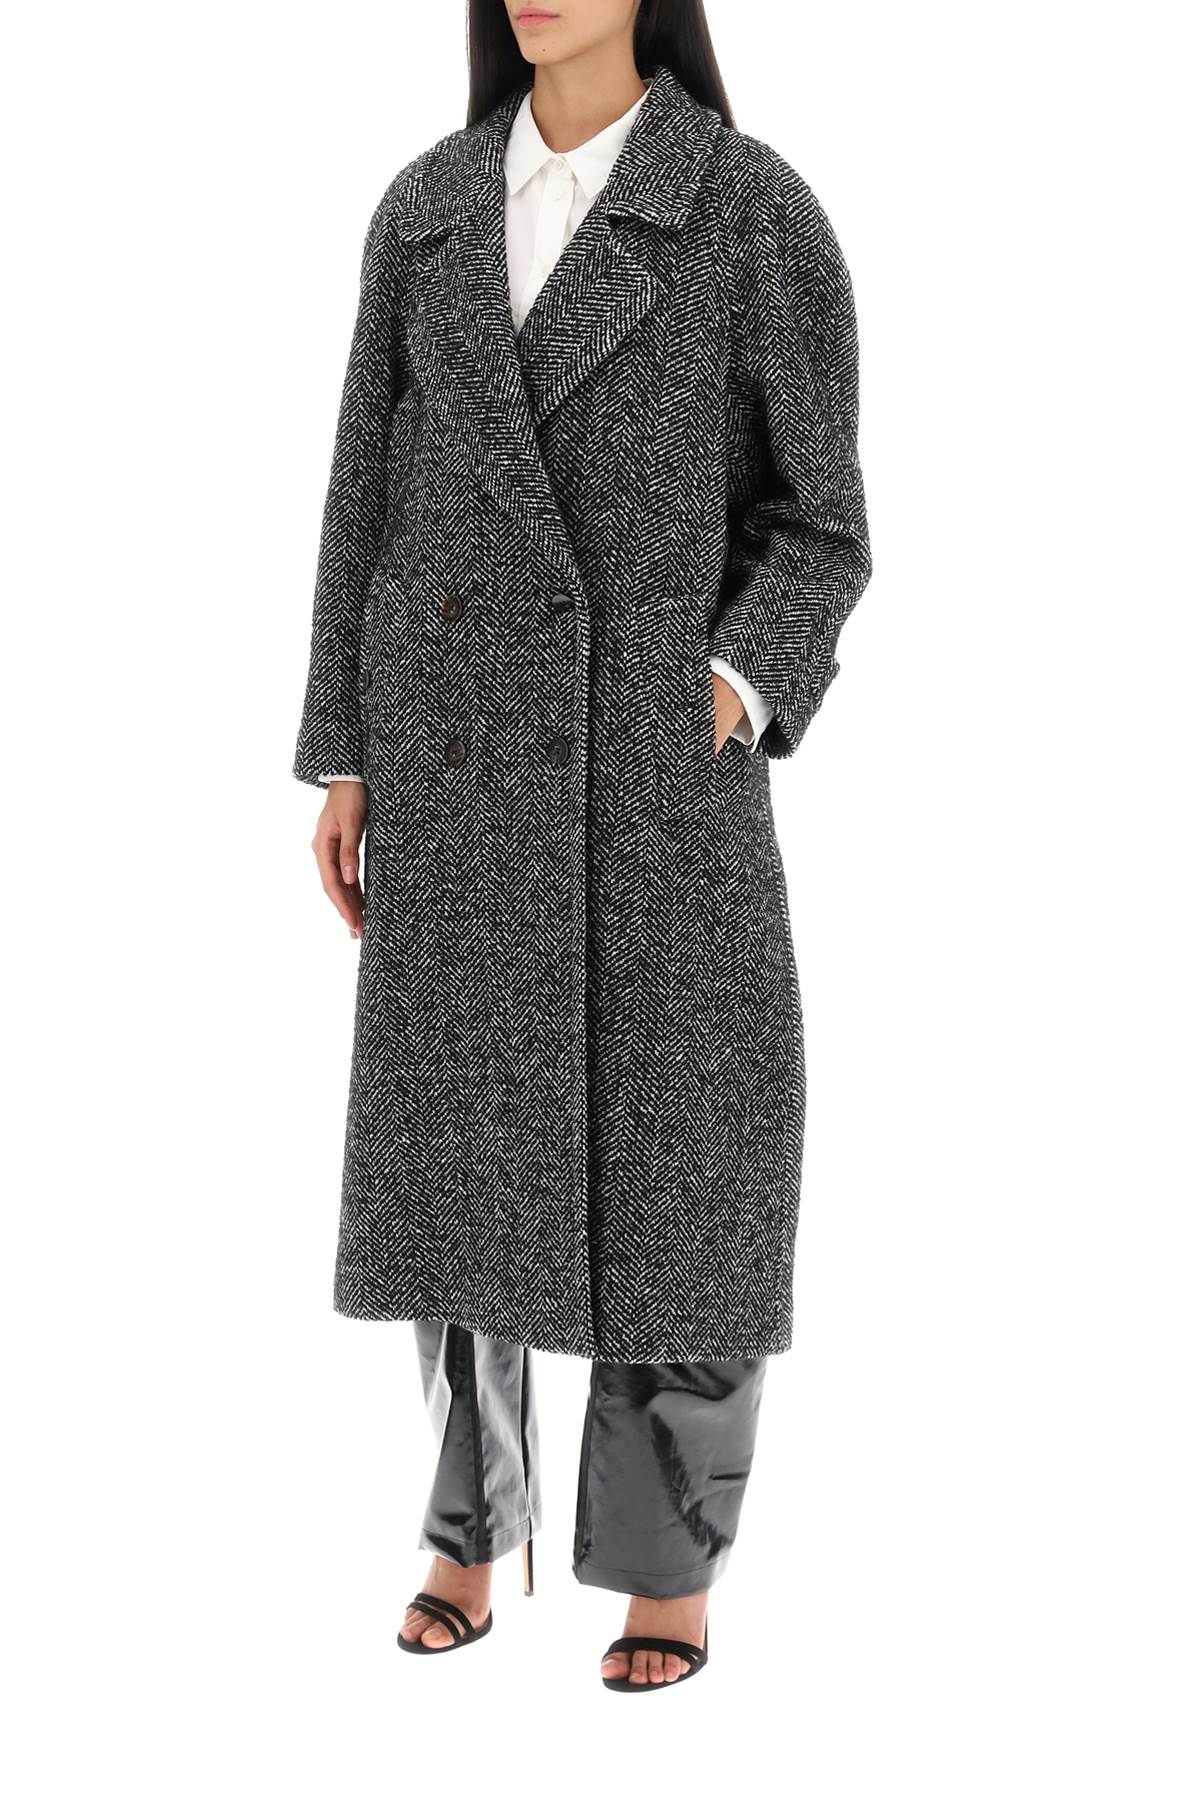 Mvp wardrobe oversized herringbone coat-3